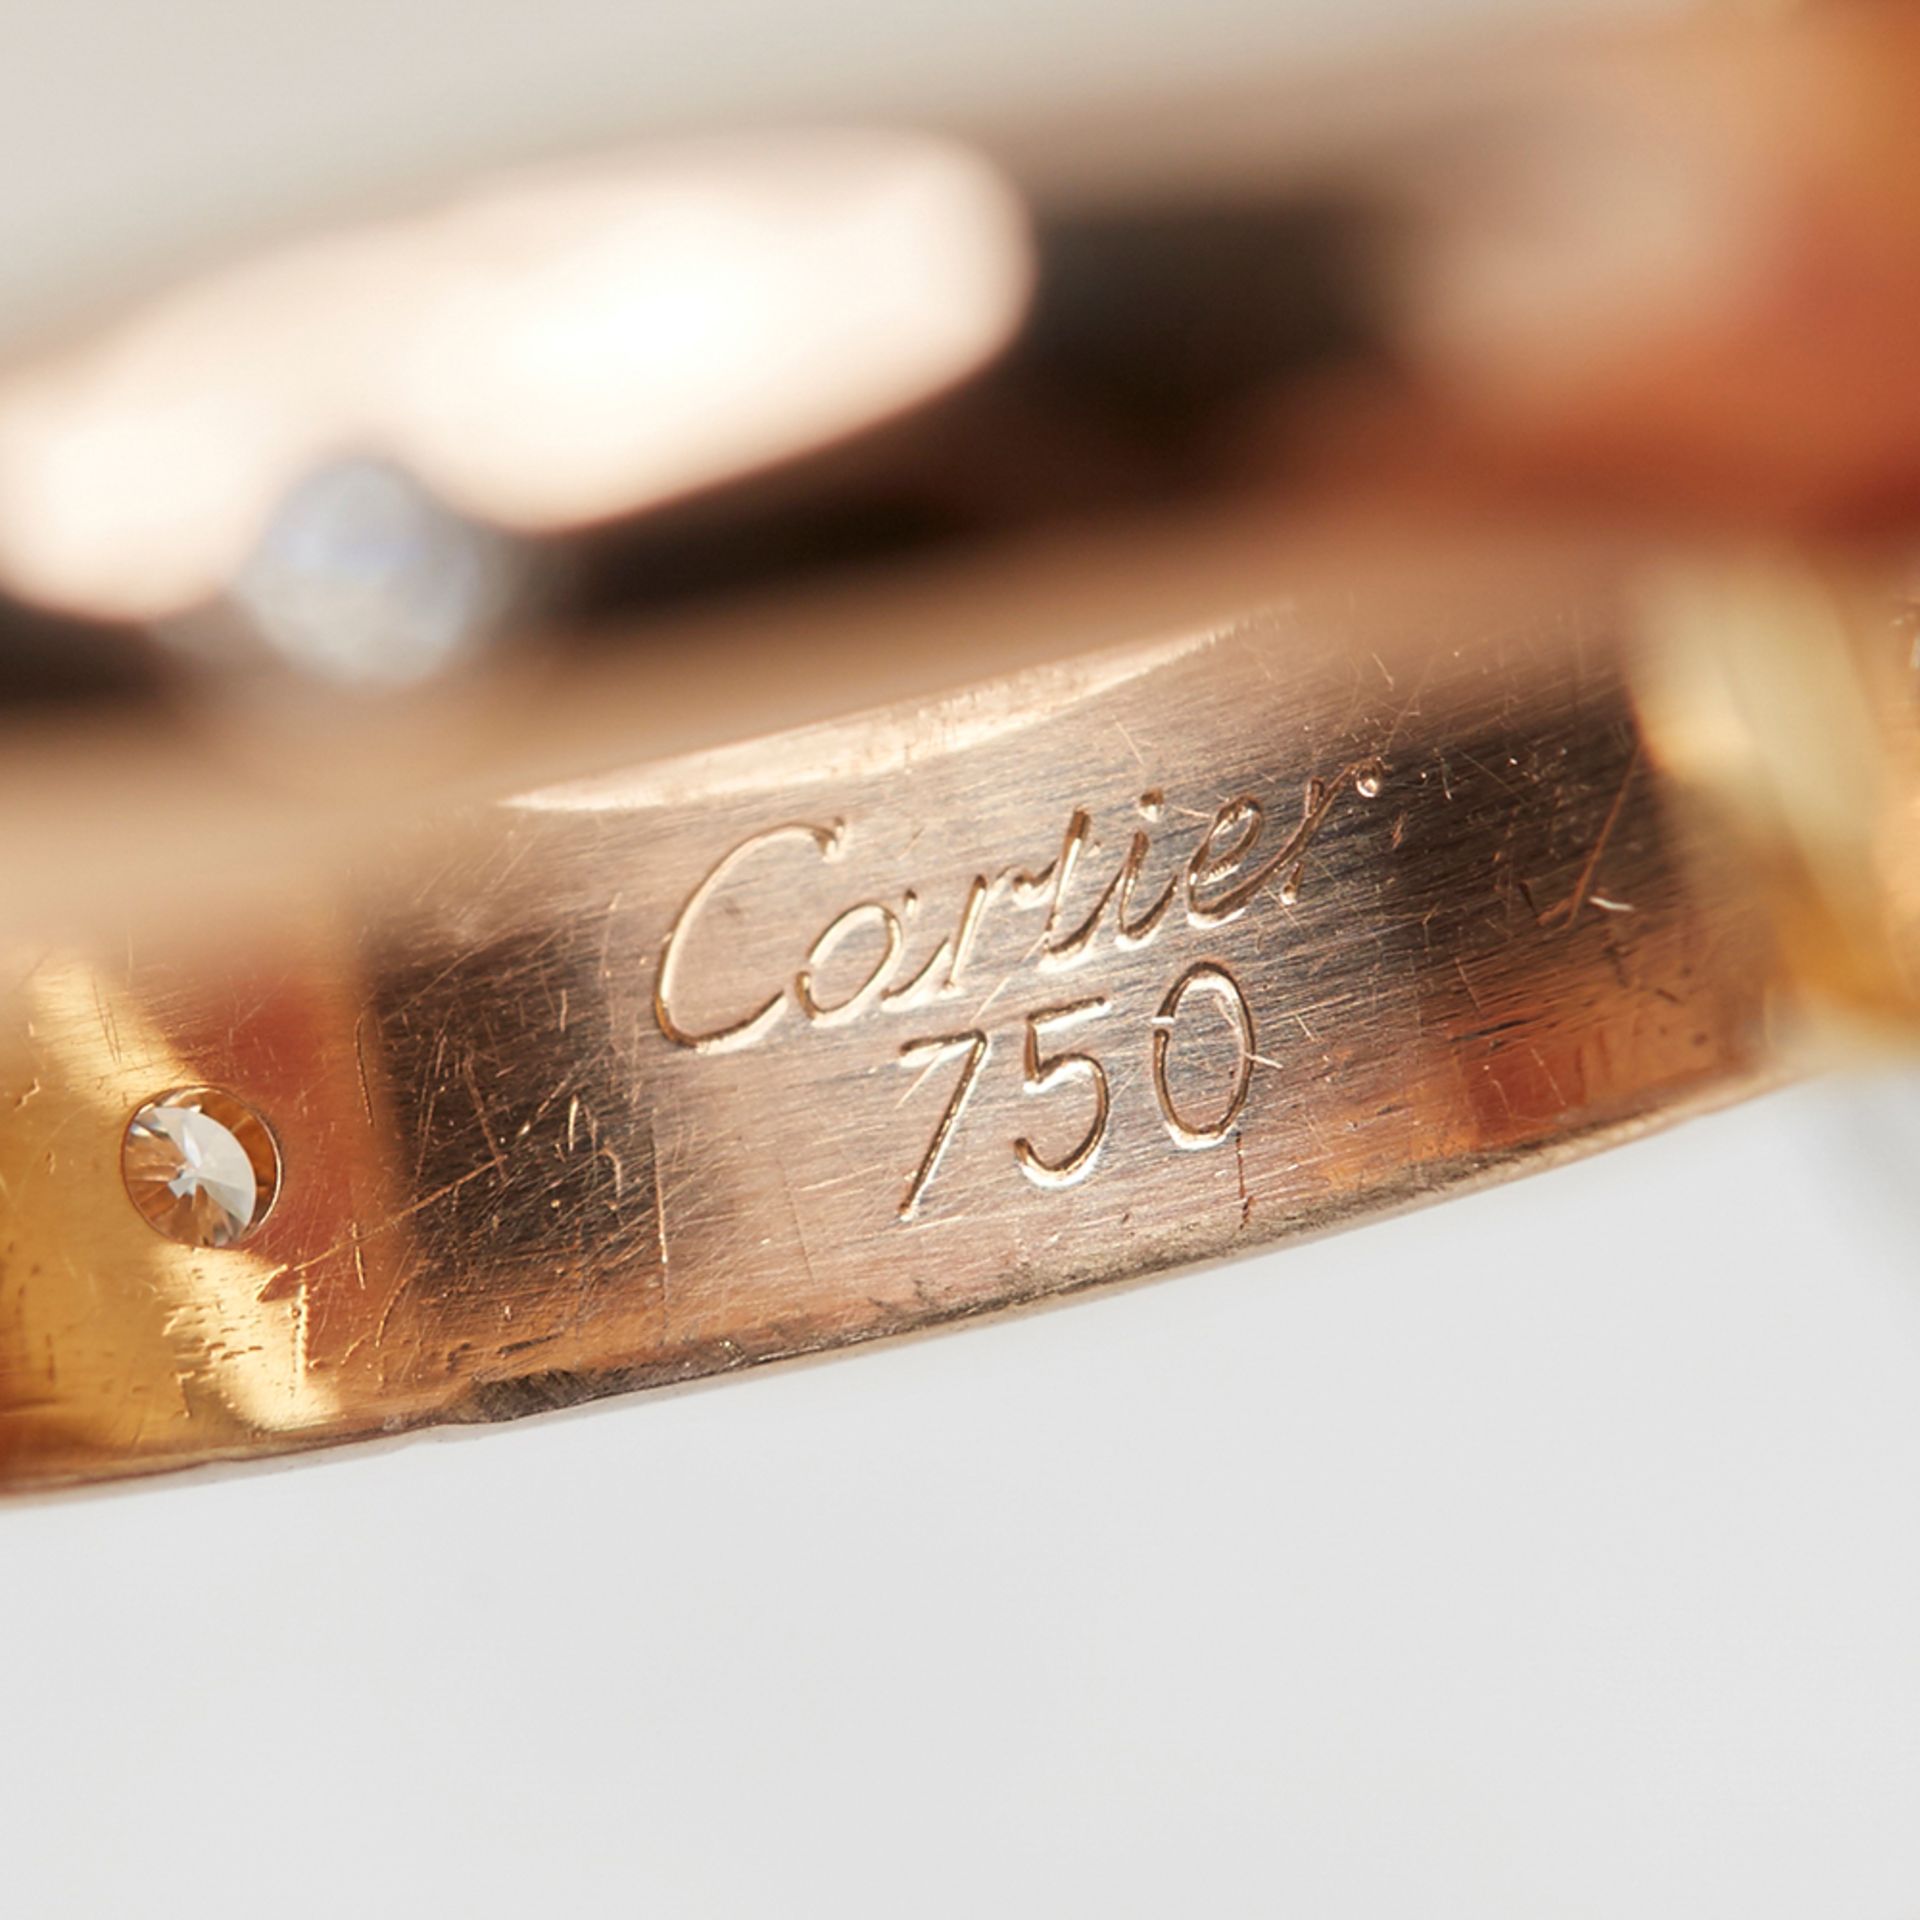 Cartier Diamond Trinity Ring - Image 6 of 10